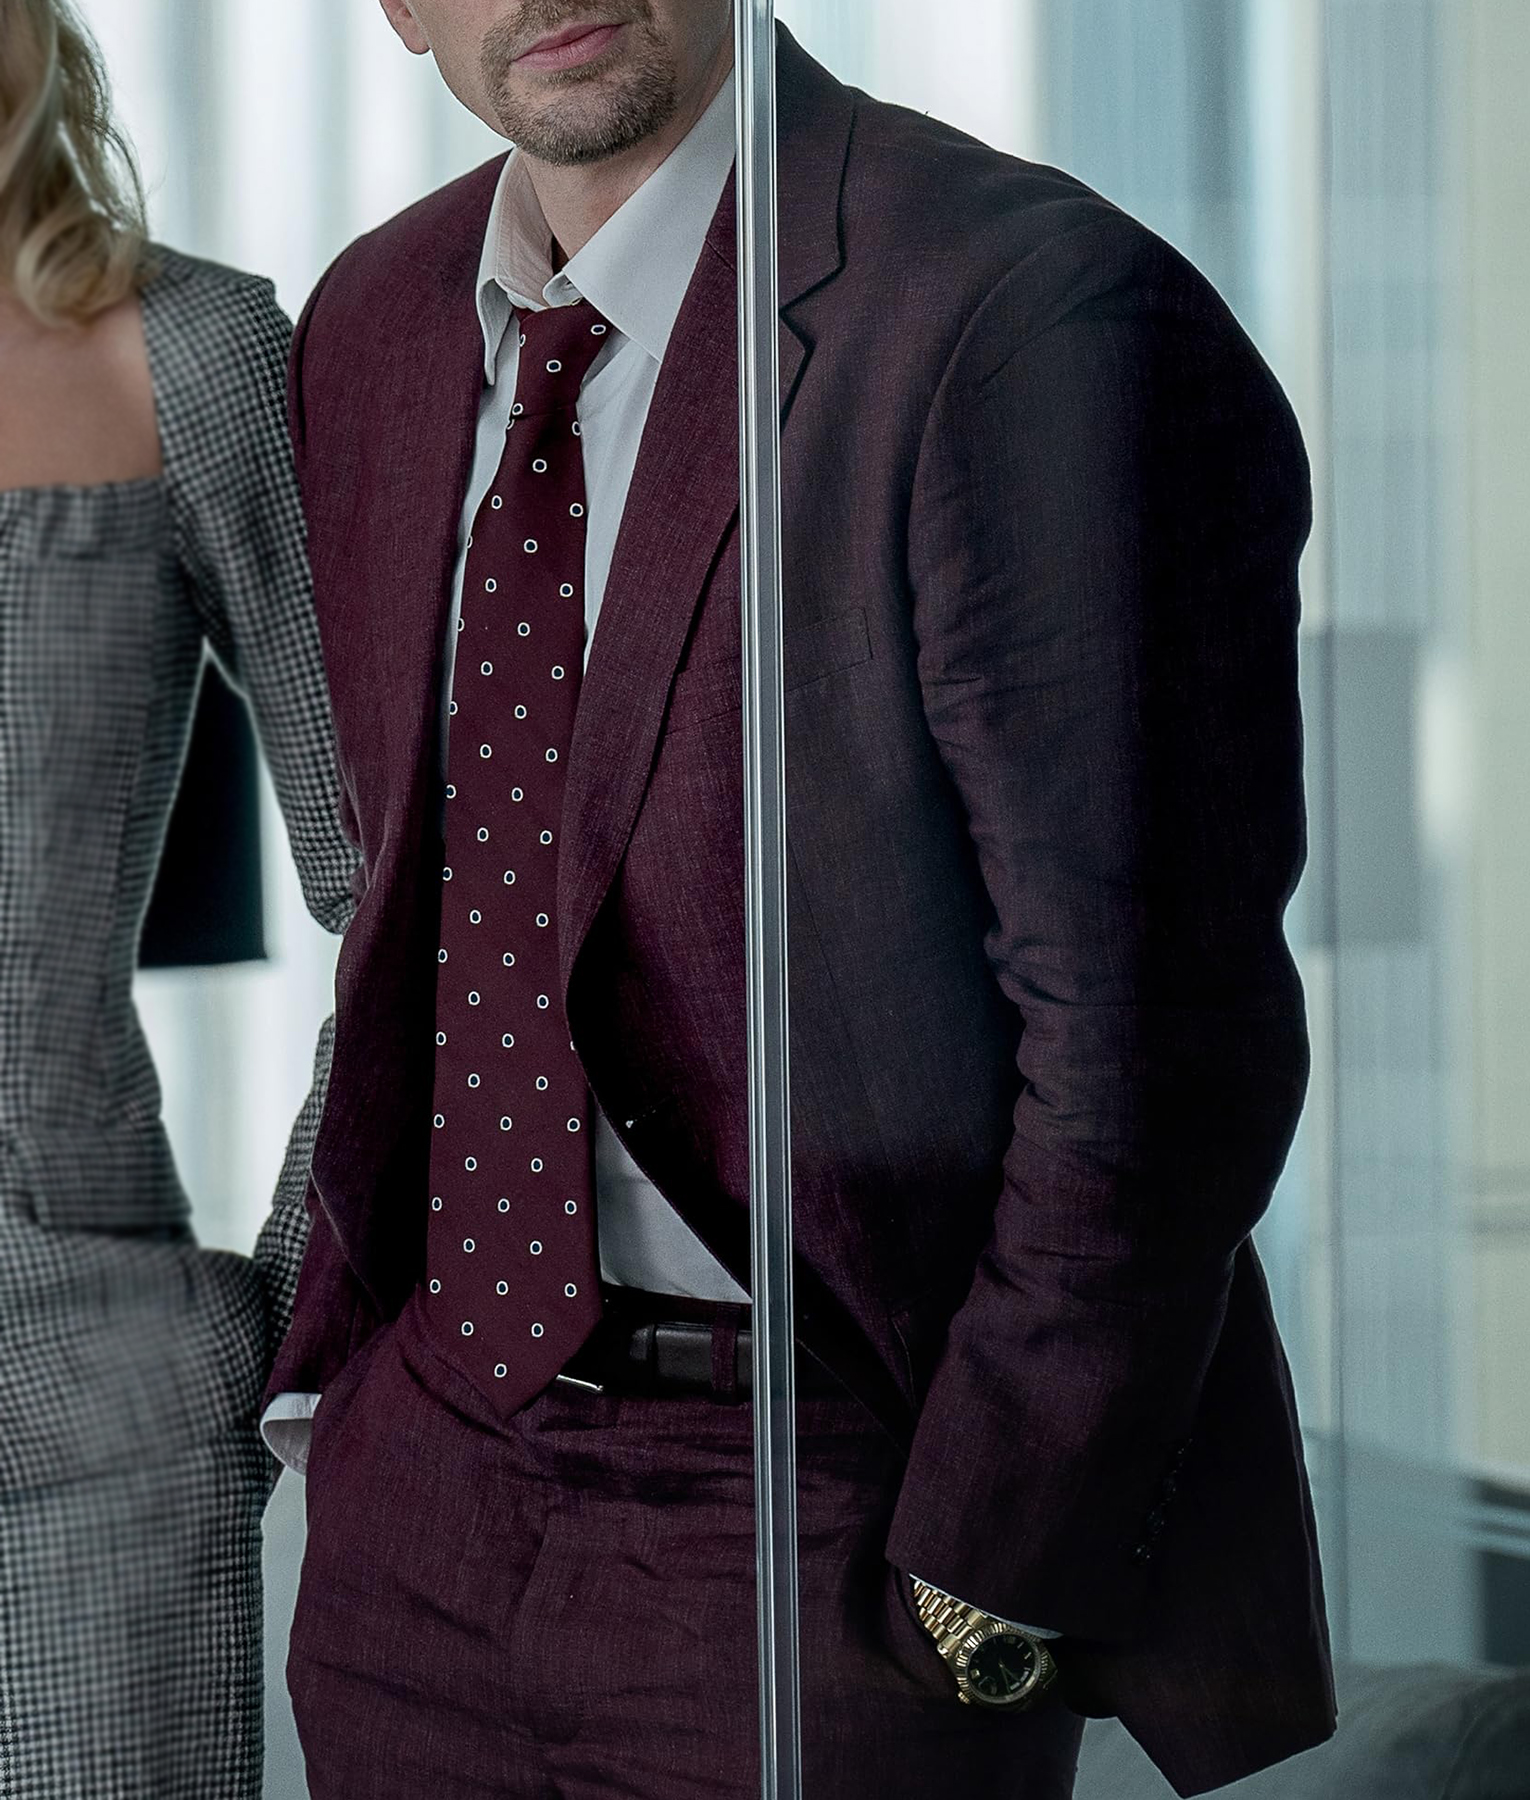 Chris Evans Pain Hustlers Burgundy Suit (2)